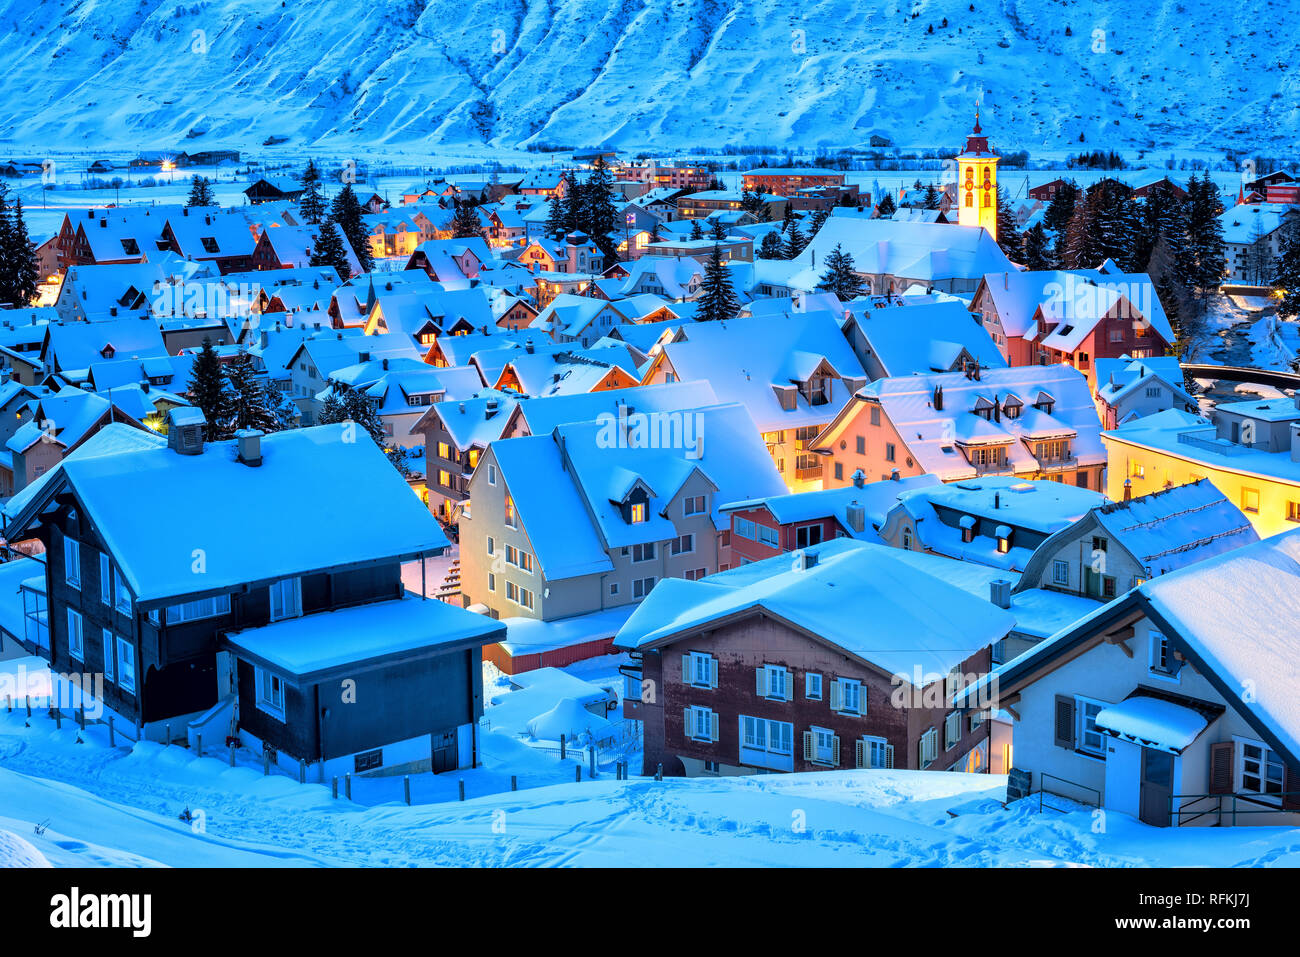 Andermatt Dorf in den Schweizer Alpen Berge, Schnee im Winter in blau Abend  licht, Uri, Schweiz Stockfotografie - Alamy